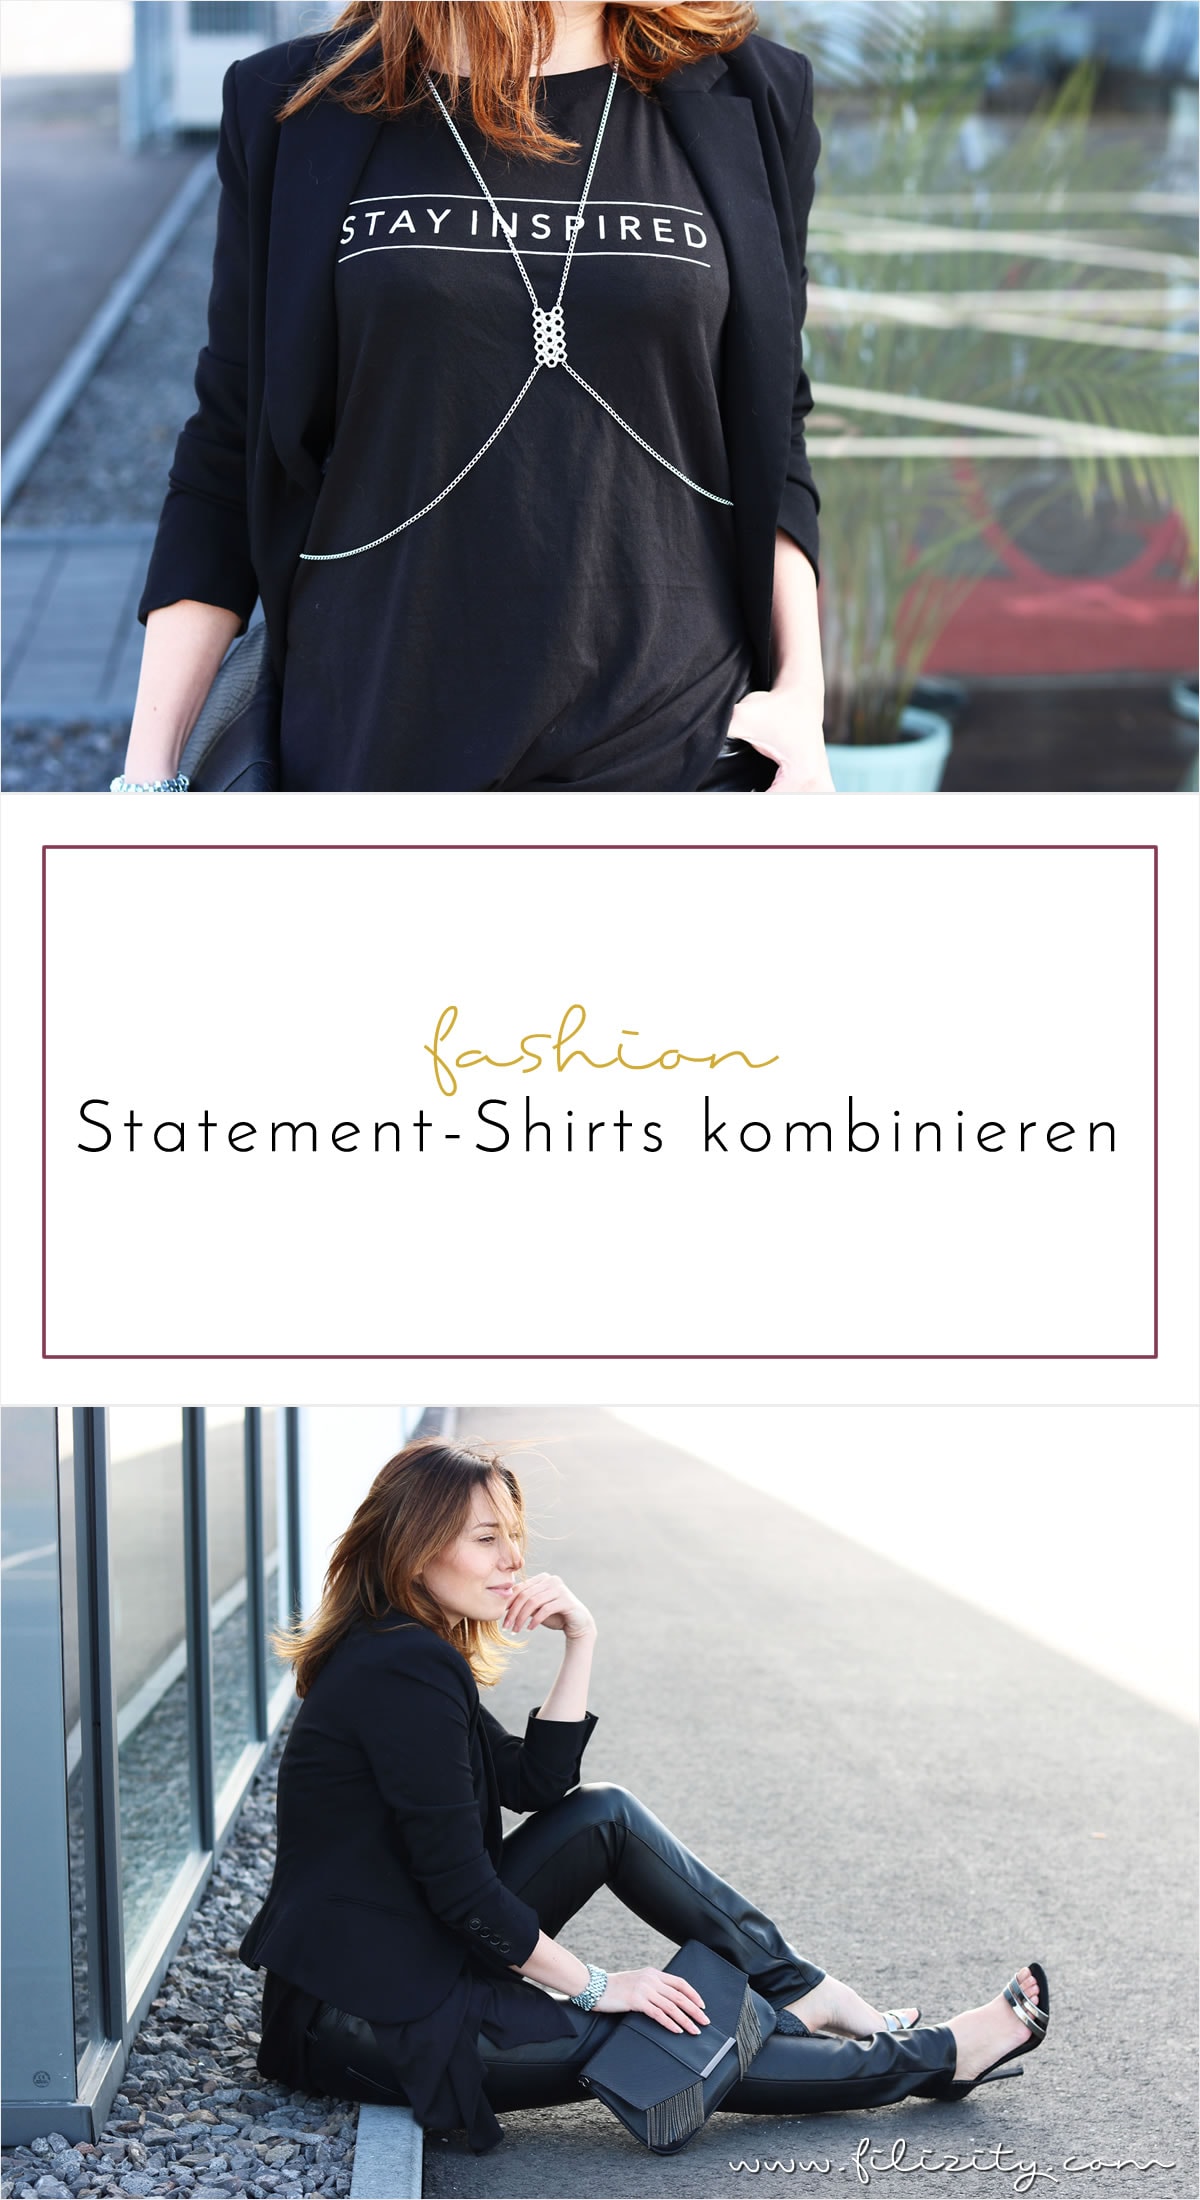 Mode mit Message – So kombiniert ihr Statement-Shirts